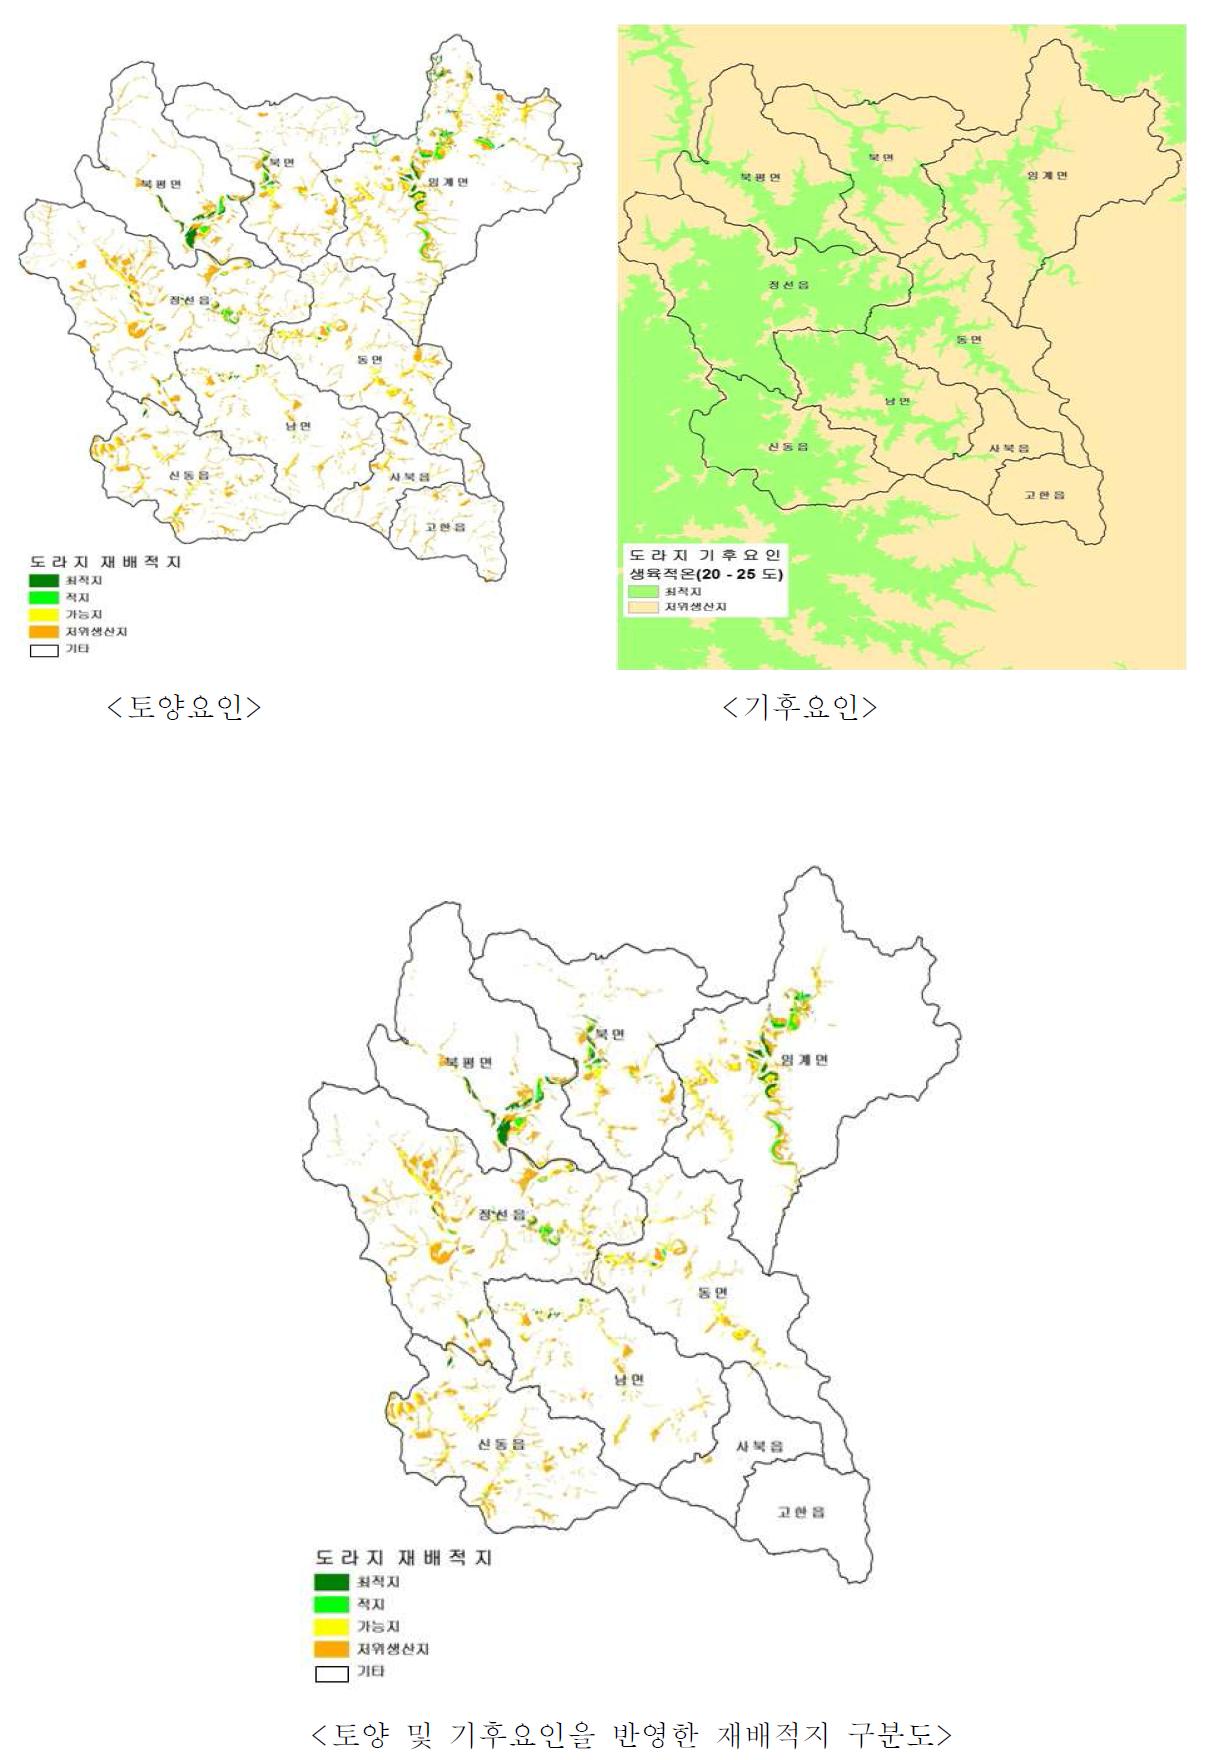 재배적지구분도 (예: 도라지, 강원 정선군, 2010)